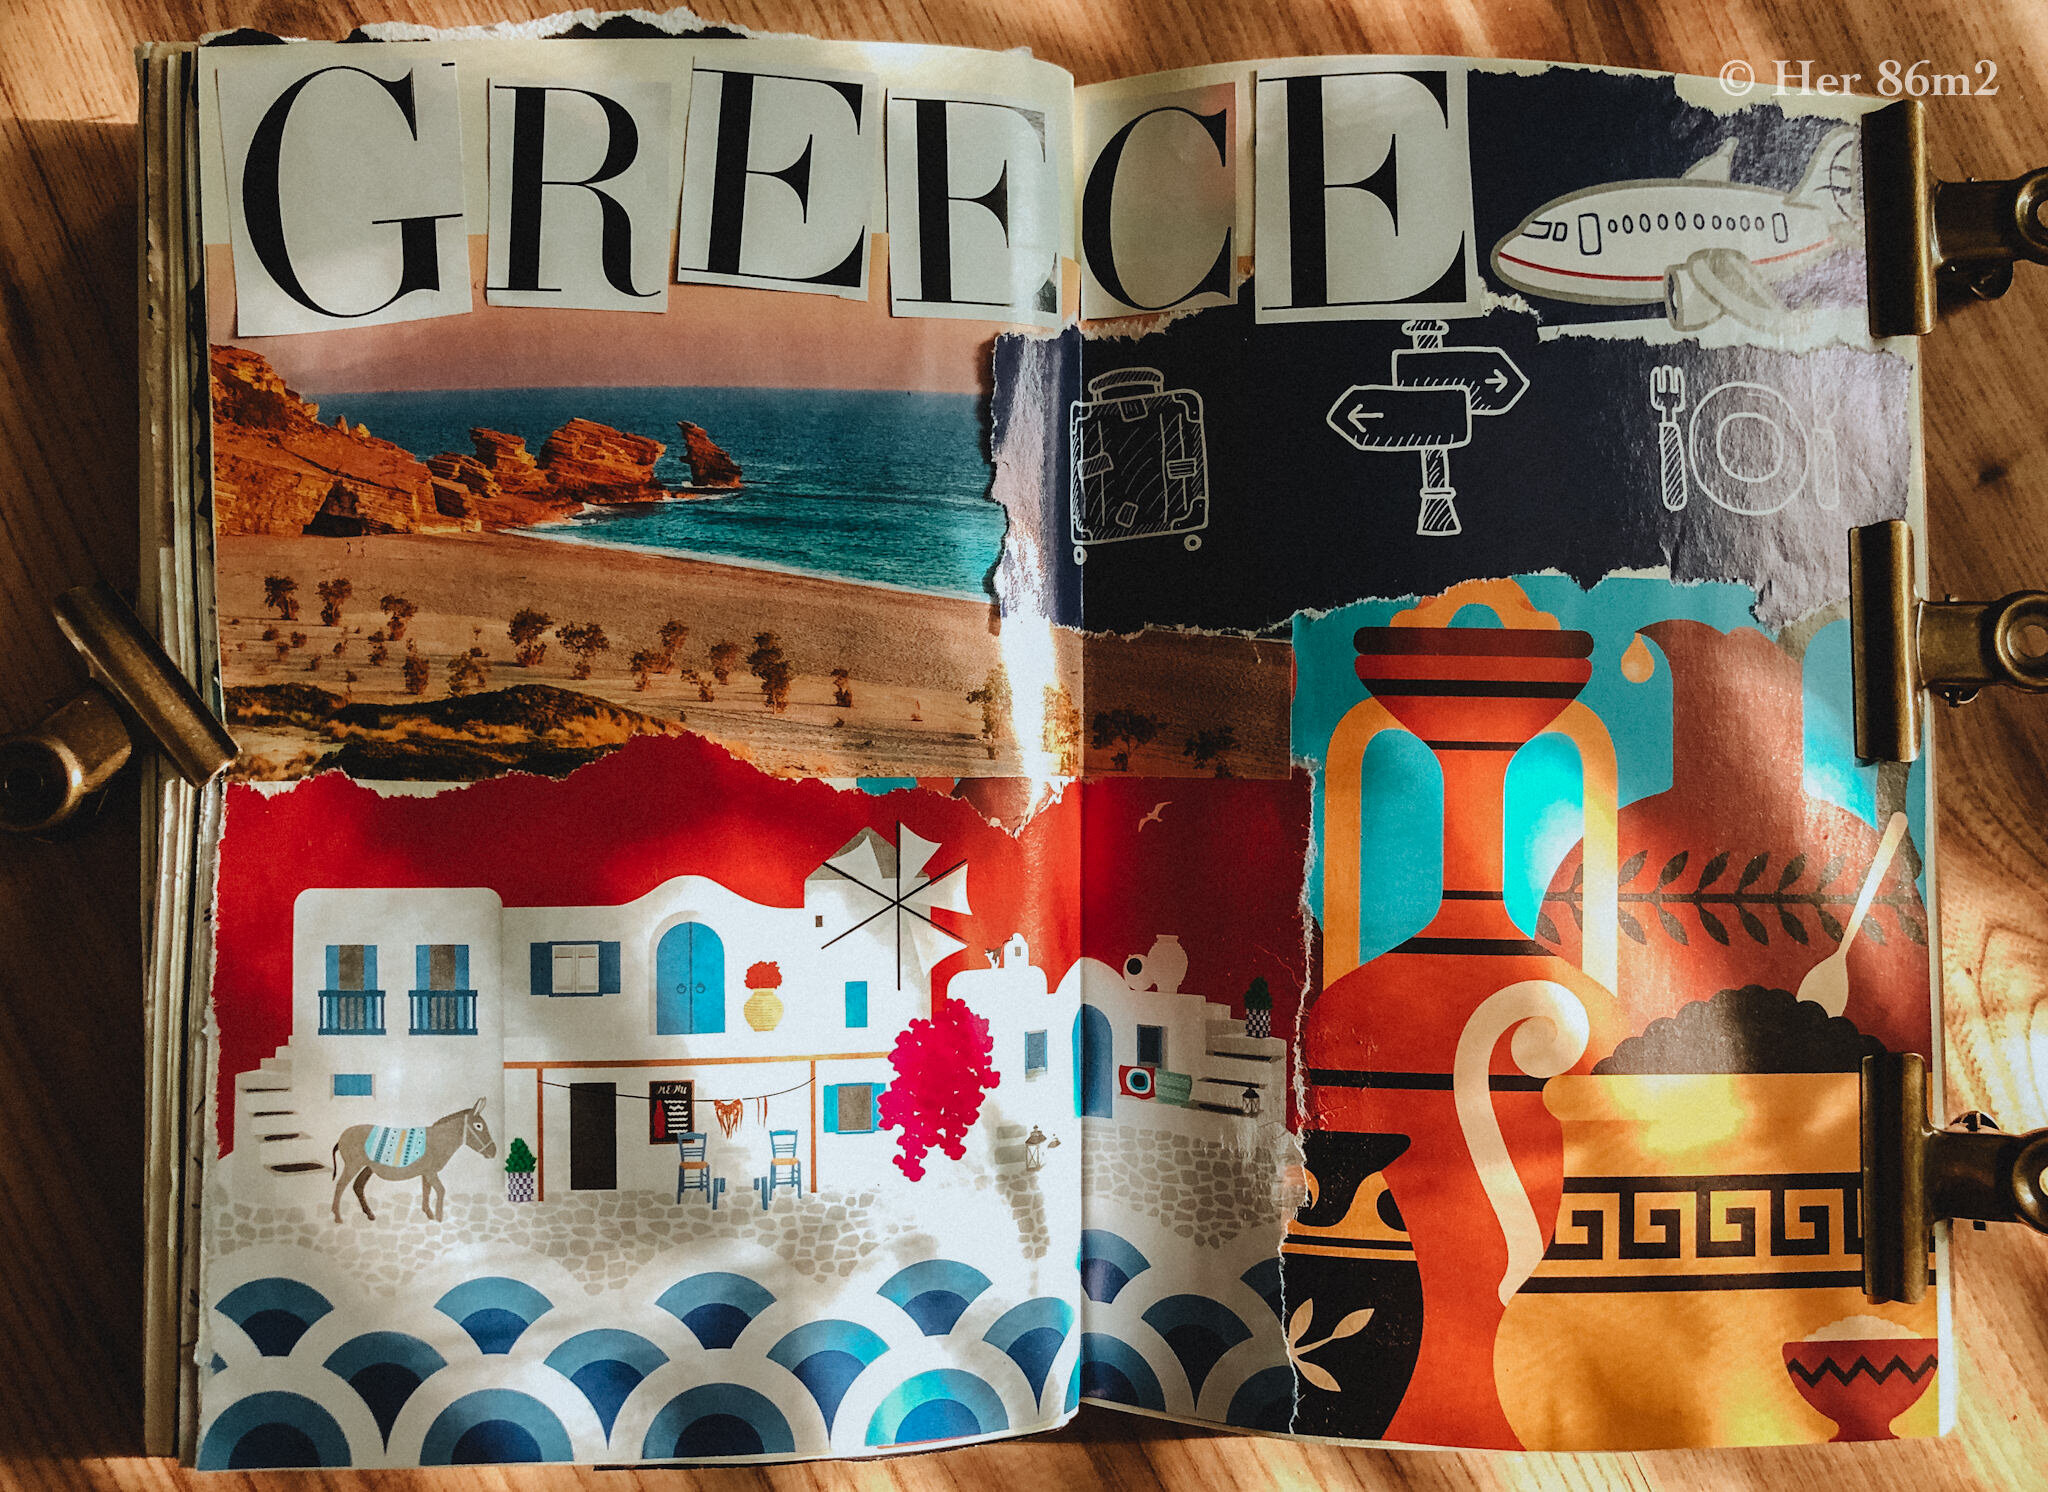  Hy Lạp với những hòn đảo có cảm sống động mà không nơi nào khác mang lại. Blog về Hydra:  https://www.her86m2.com/travel/hydra-island-of-greece  